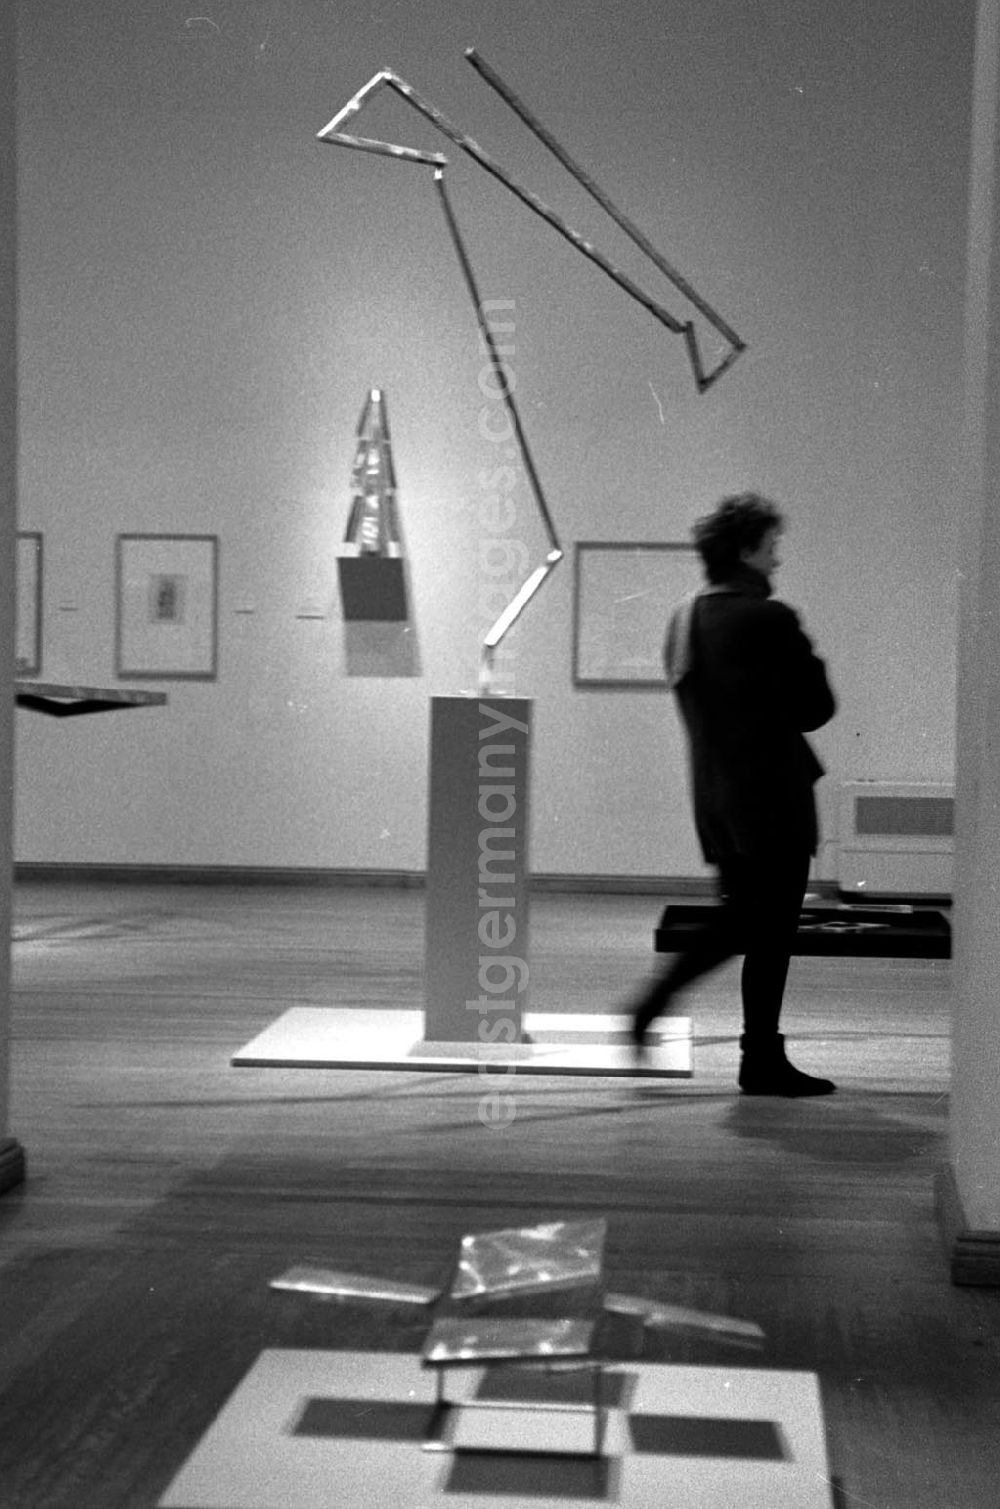 GDR image archive: Berlin - Plastik Rickeys-Ausstellung Bizarres und Bewegung 29.12.92